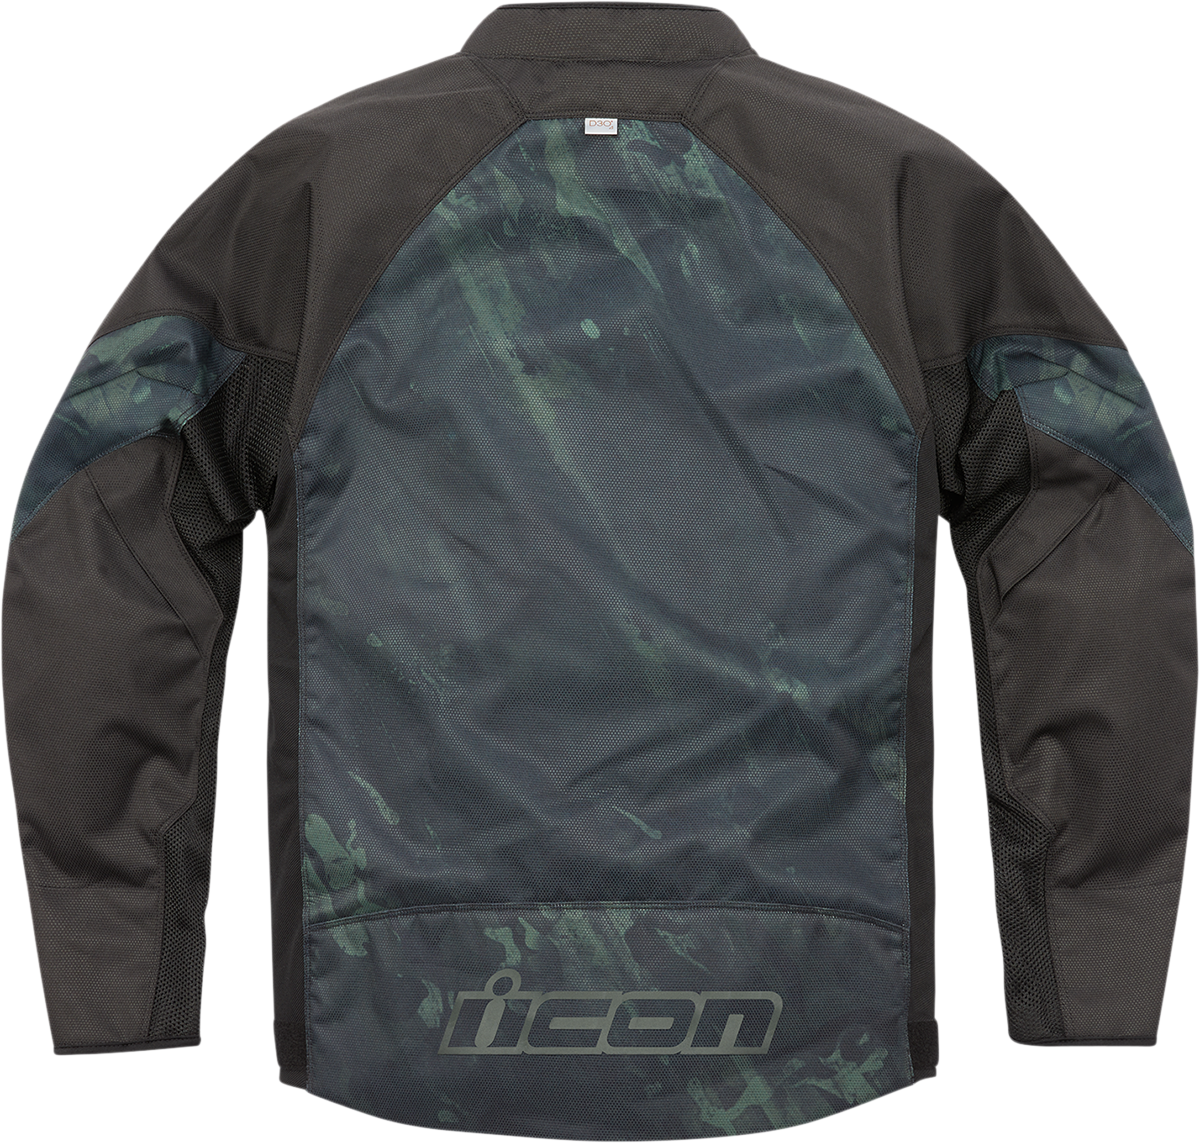 ICON Hooligan Demo™ Jacket - Black - XL 2820-5549